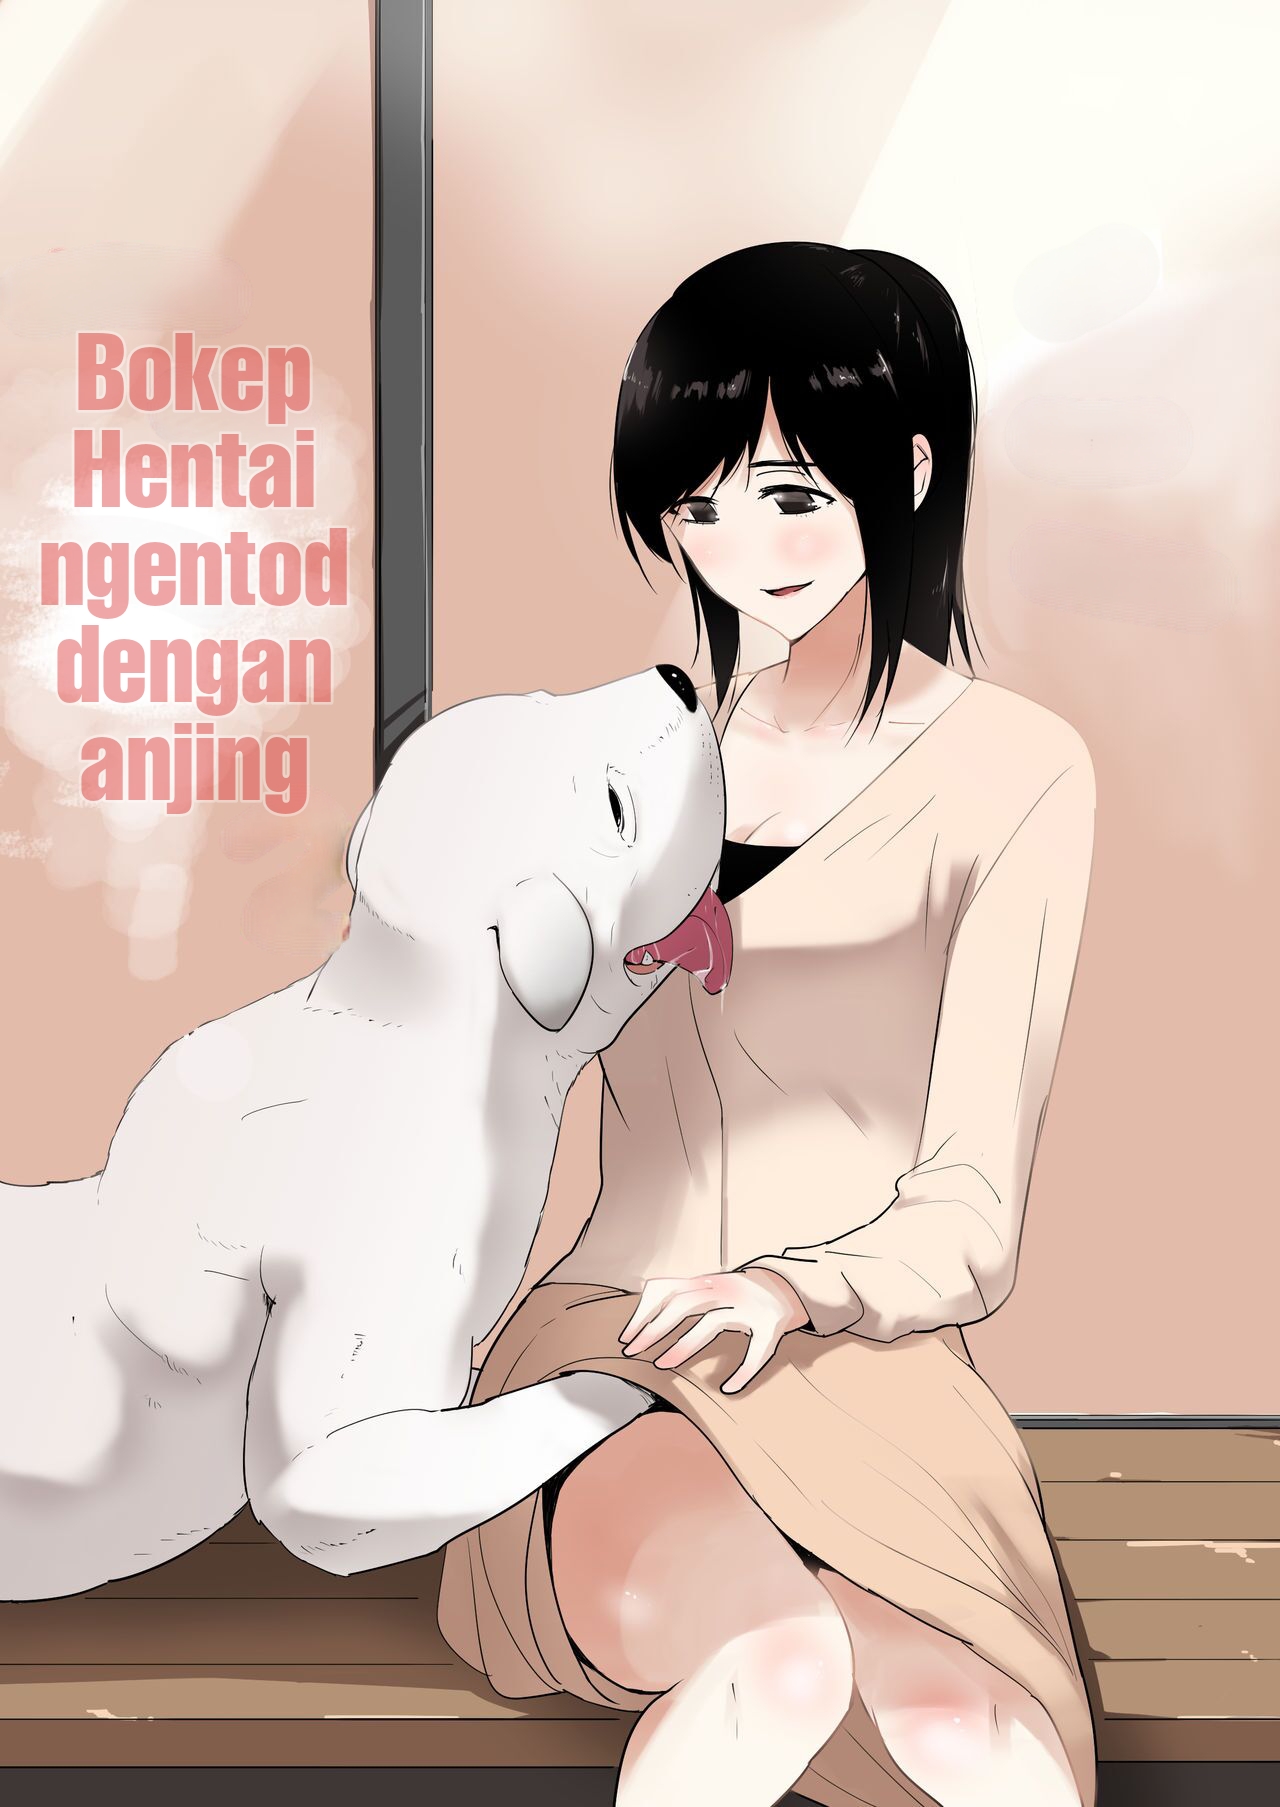 Bokep Cewek Di Entot Anjing - Bokep Hentai Ngentod Dengan Anjing - Mihentai.com